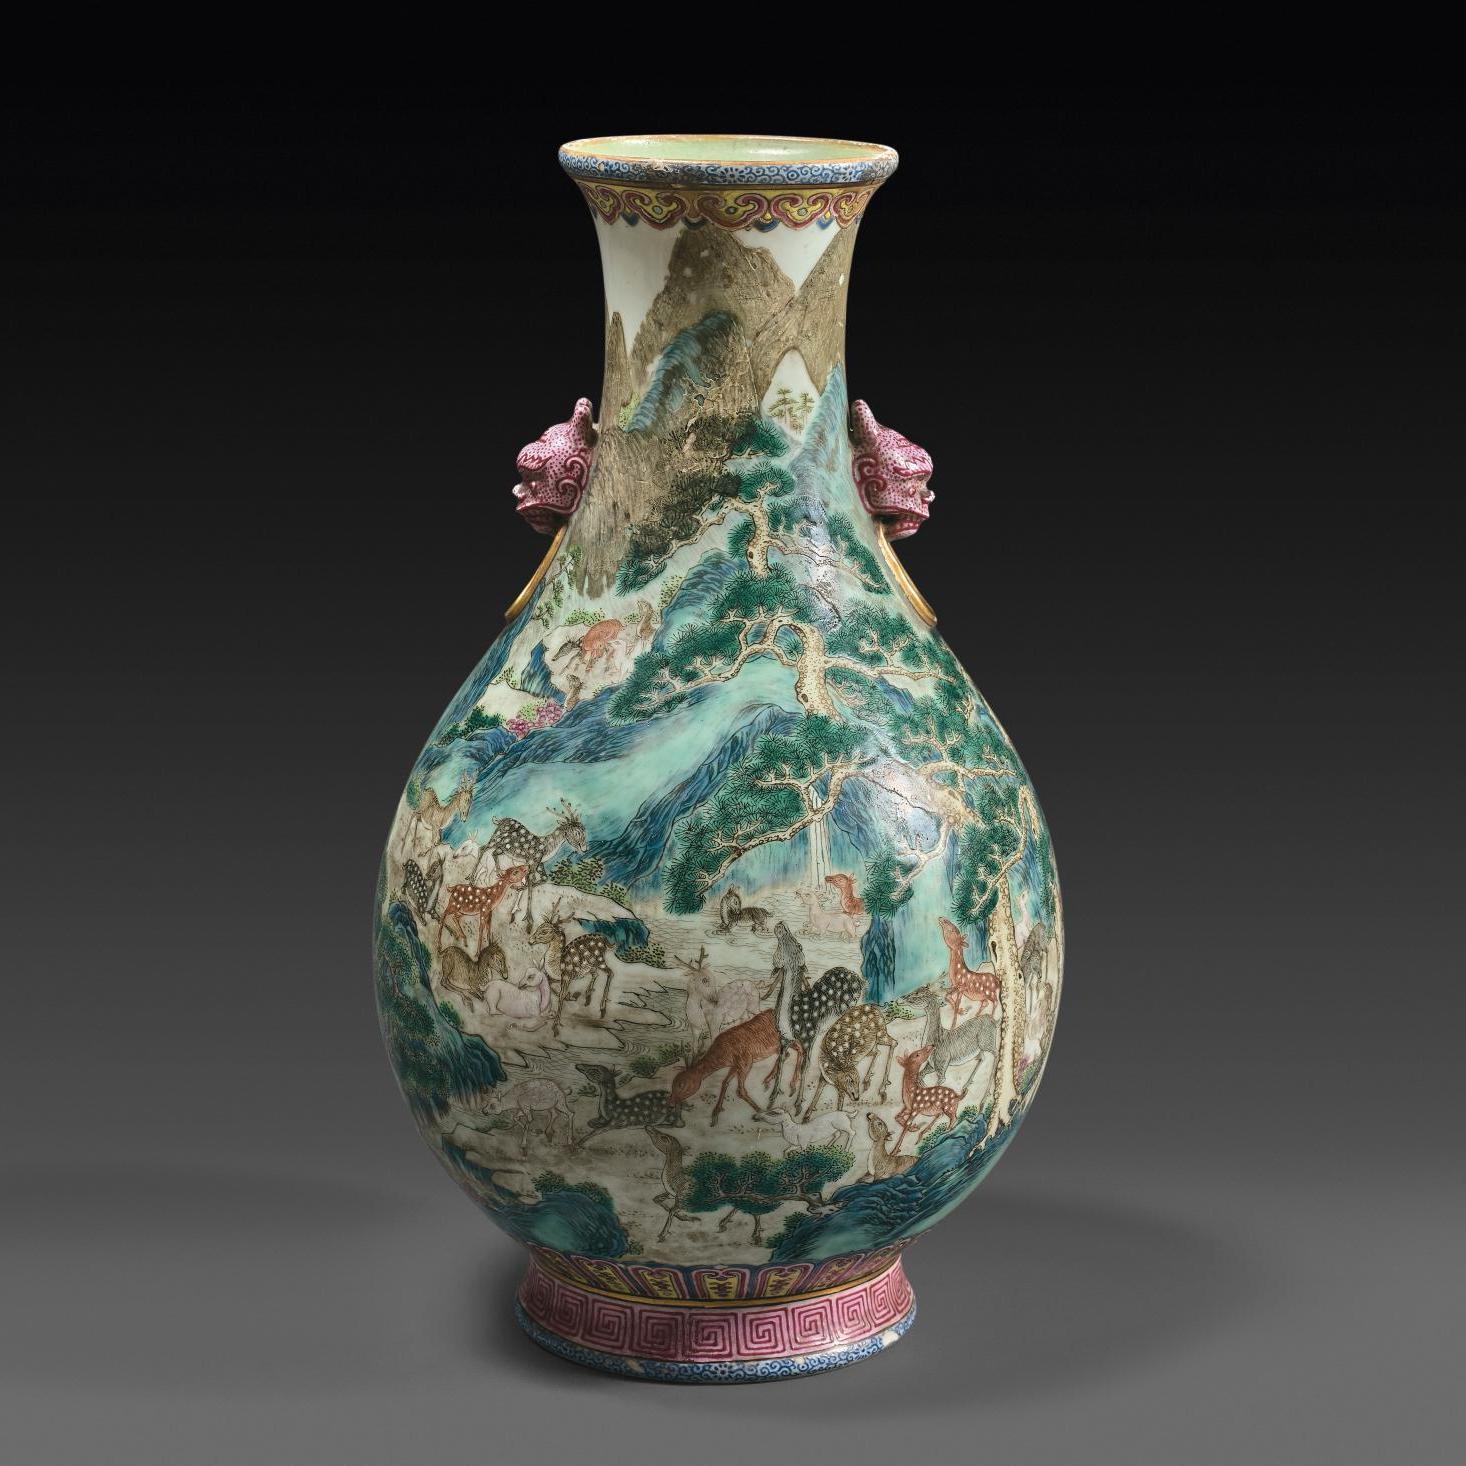 Après-vente - Van Dongen et un vase chinois aux cent daims